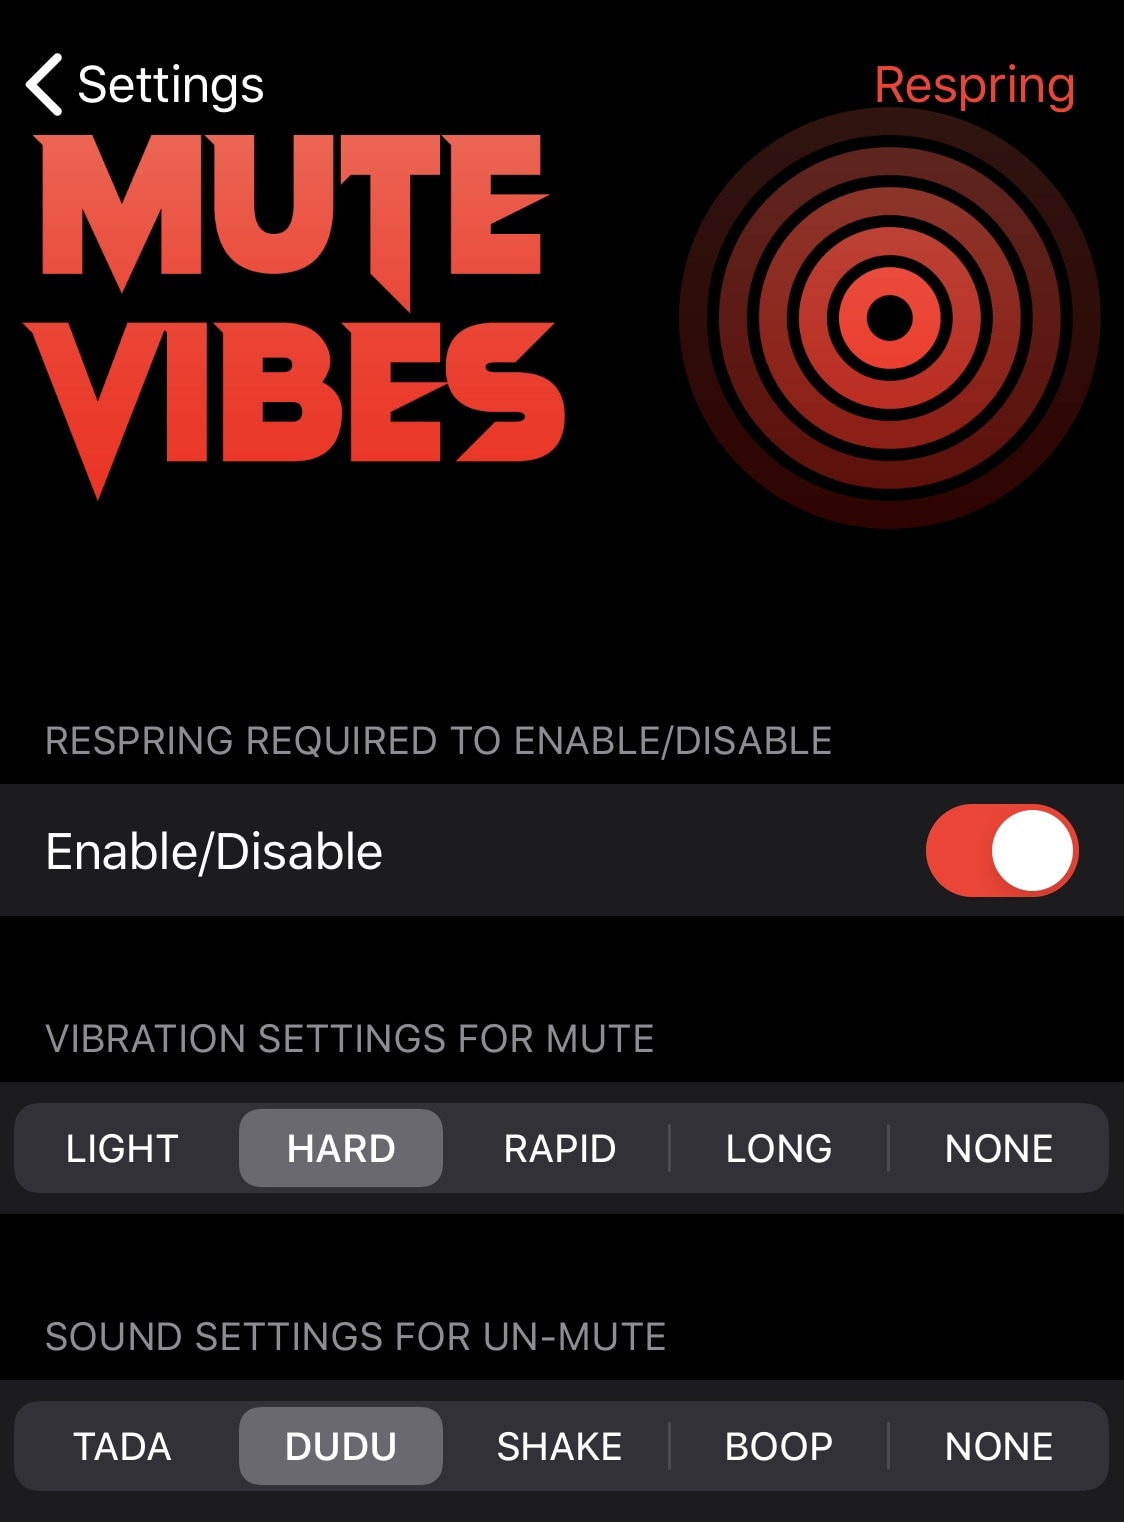 Cá nhân hóa tiếng chuông iPhone của bạn và âm thanh cuộc gọi / tắt tiếng với MuteVibes 3